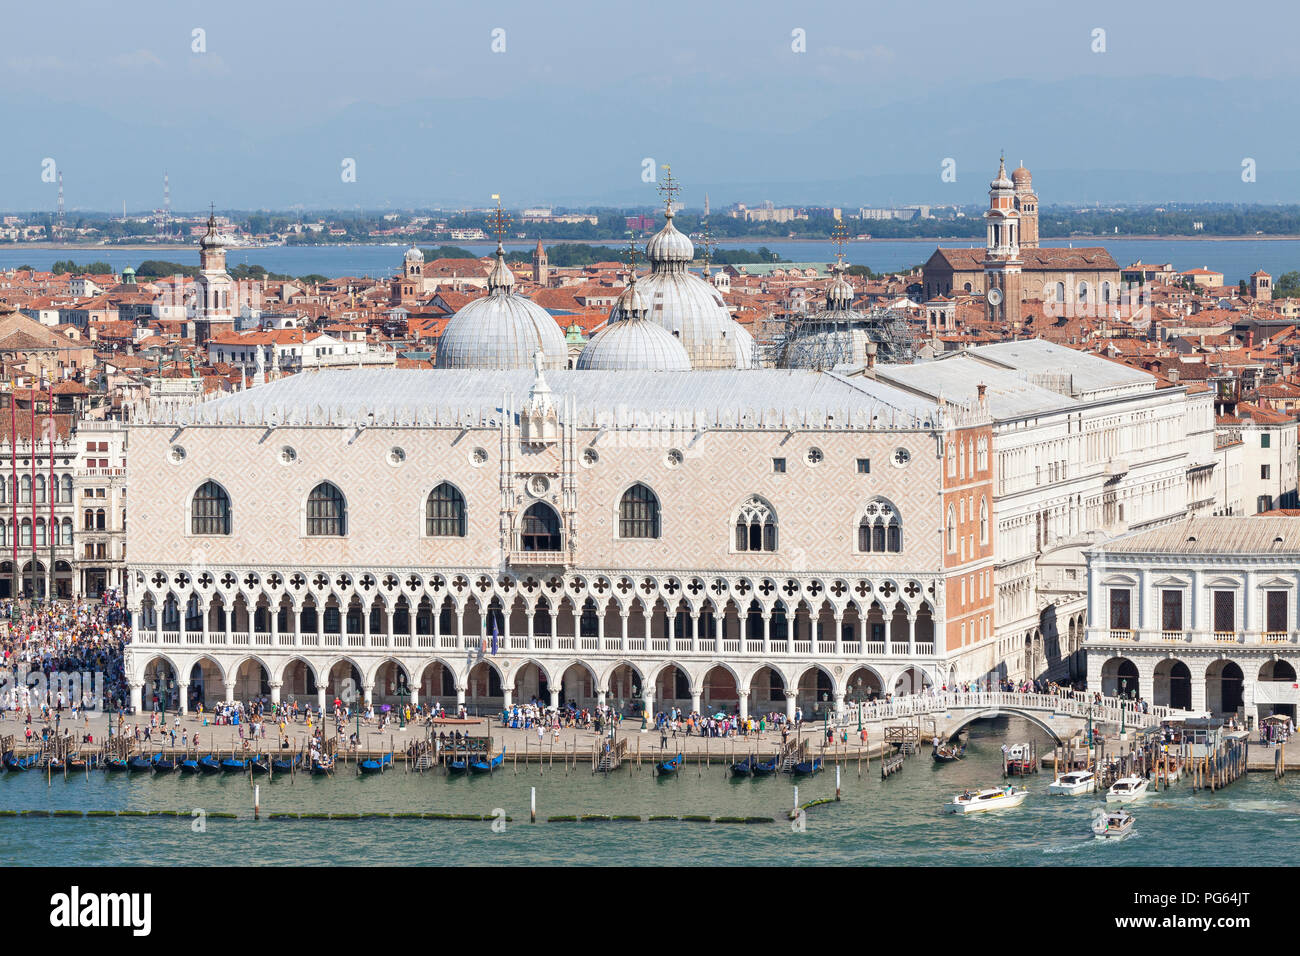 Vista aérea de la fachada exterior del Palacio Ducal, el Palacio Ducal, el Palacio Ducal, San Marco, Venecia, Véneto, Italia con vistas a la península y a mí Foto de stock